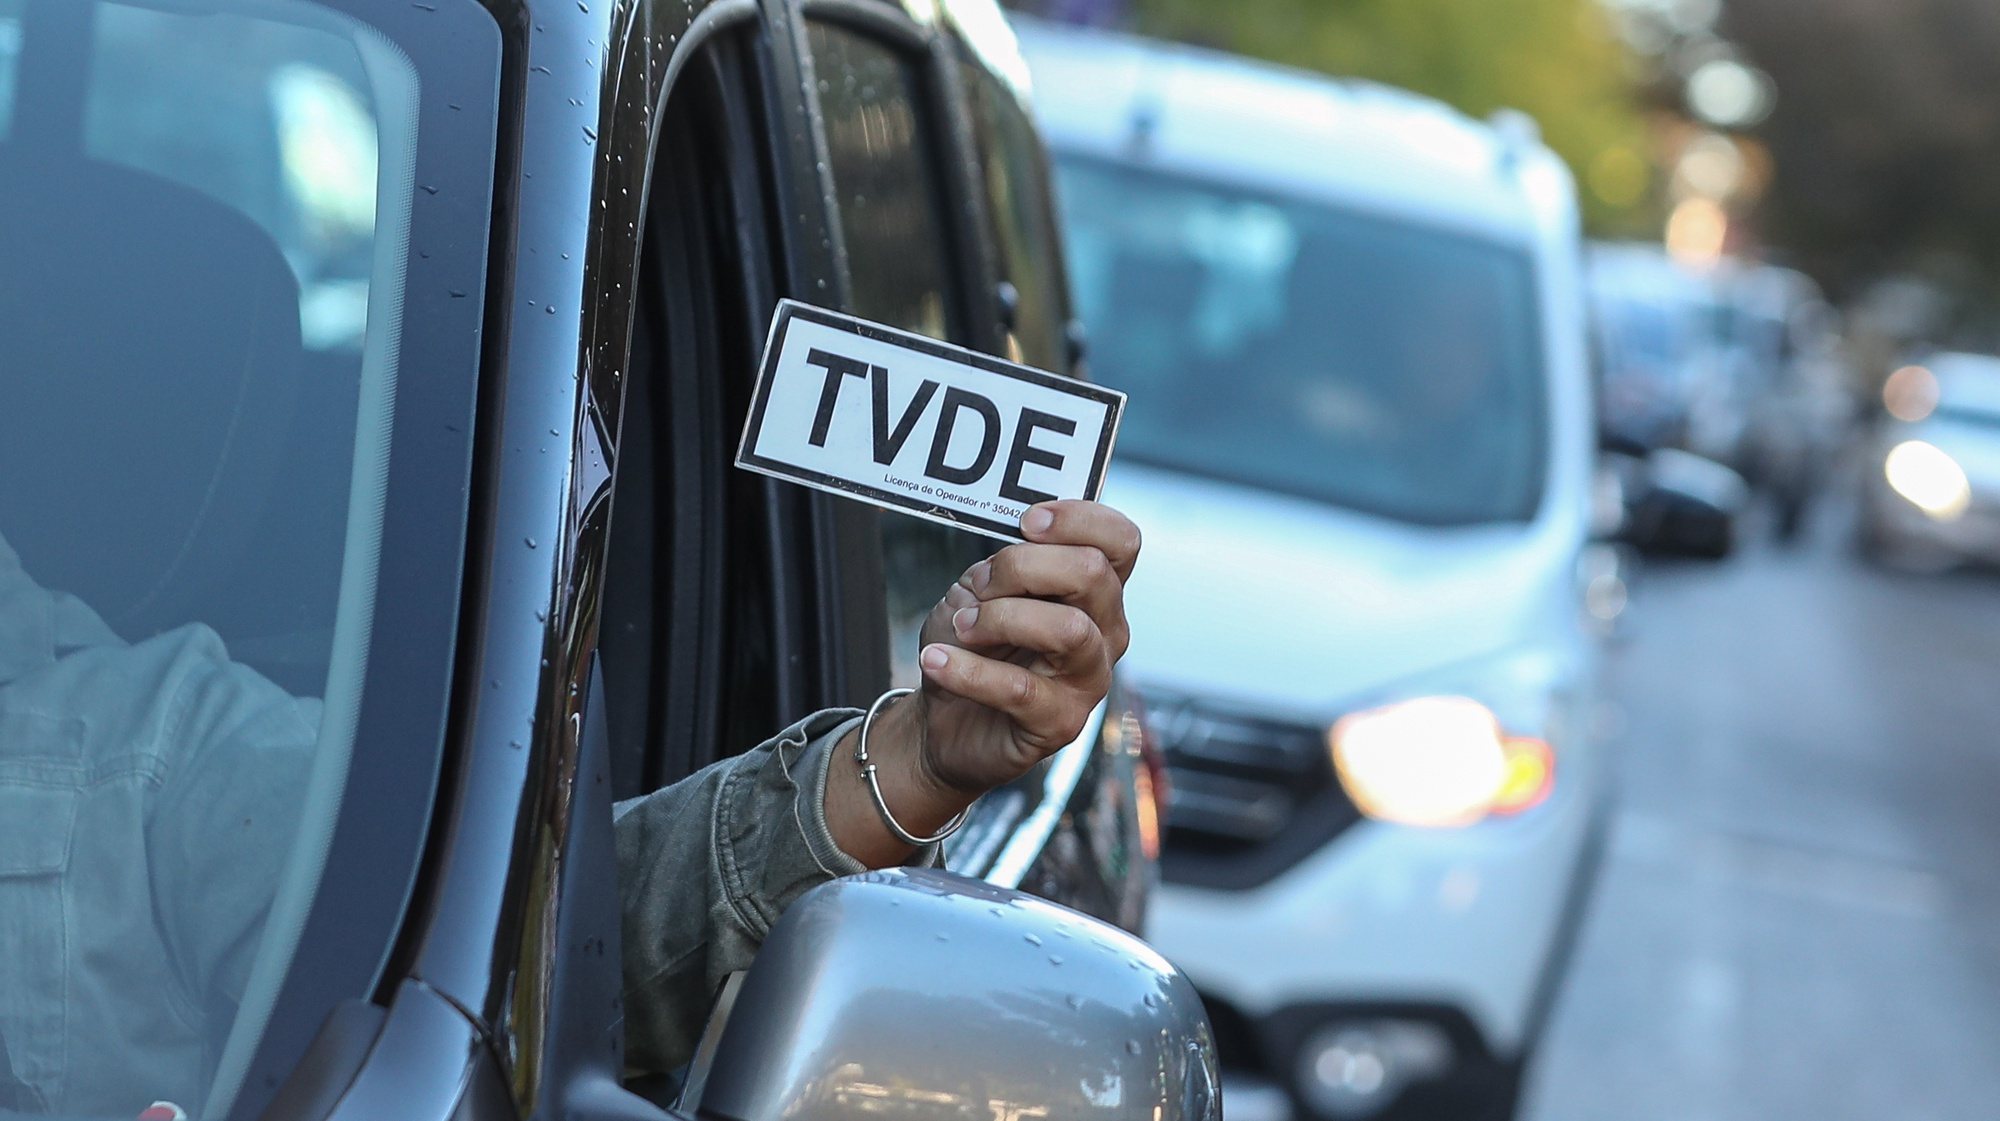 Protesto de motoristas e operadores de TVDE, em Lisboa, 03 de novembro de 2021. Esta ação tem como objetivo protestar contra a política de preços unilateral das plataformas Uber, Bolt e Freenow. ANTÓNIO COTRIM/LUSA